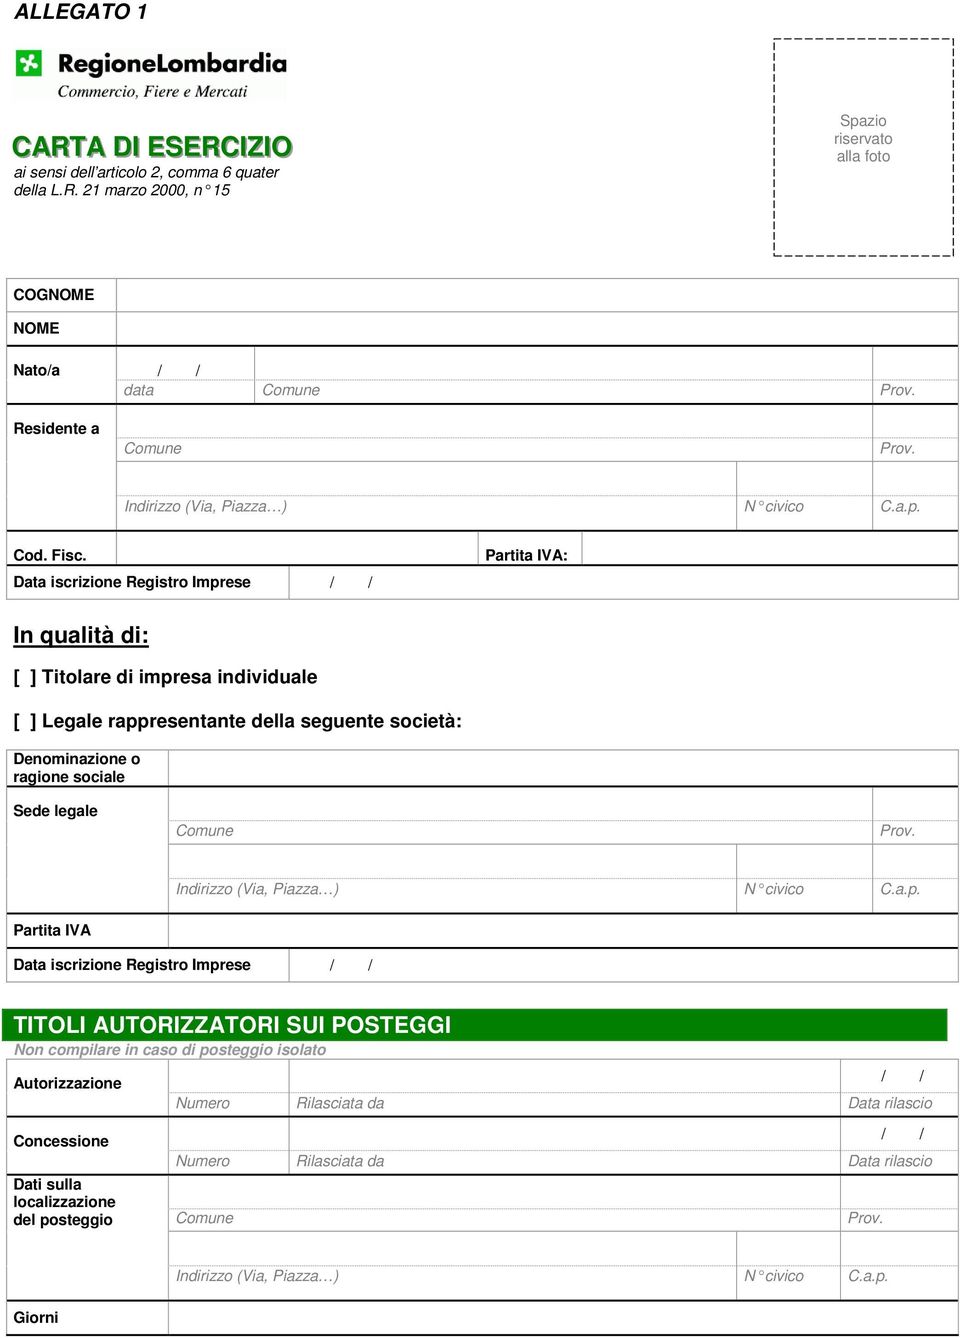 Data iscrizione Registro Imprese Partita IVA: In qualità di: [ ] Titolare di impresa individuale [ ] Legale